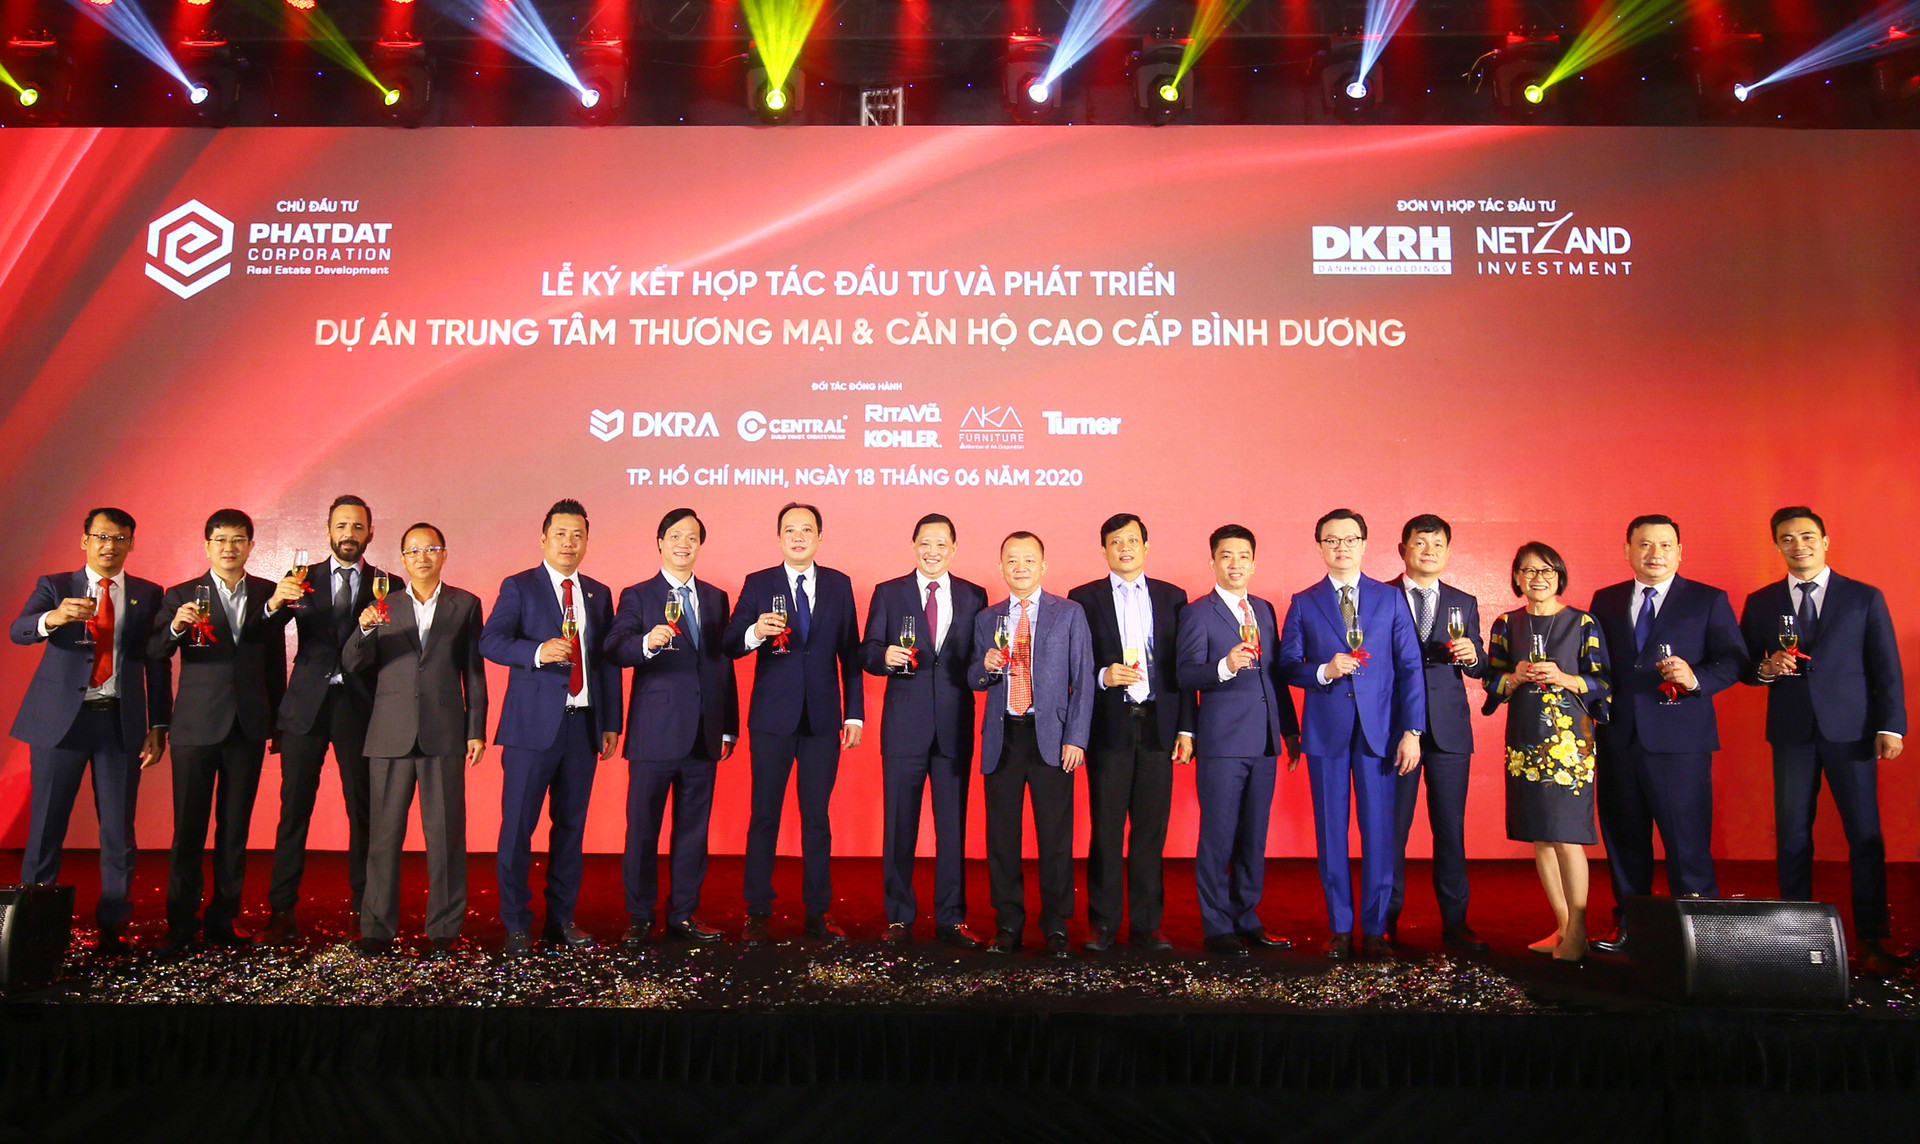 3.Sự hợp tác giữa các thương hiệu hàng đầu trong lĩnh vực BĐS sẽ nâng tầm Trung tâm thương mại & Căn hộ cao cấp Bình Dương trở thành biểu tượng đầy tự hào của TP.Thuận An.